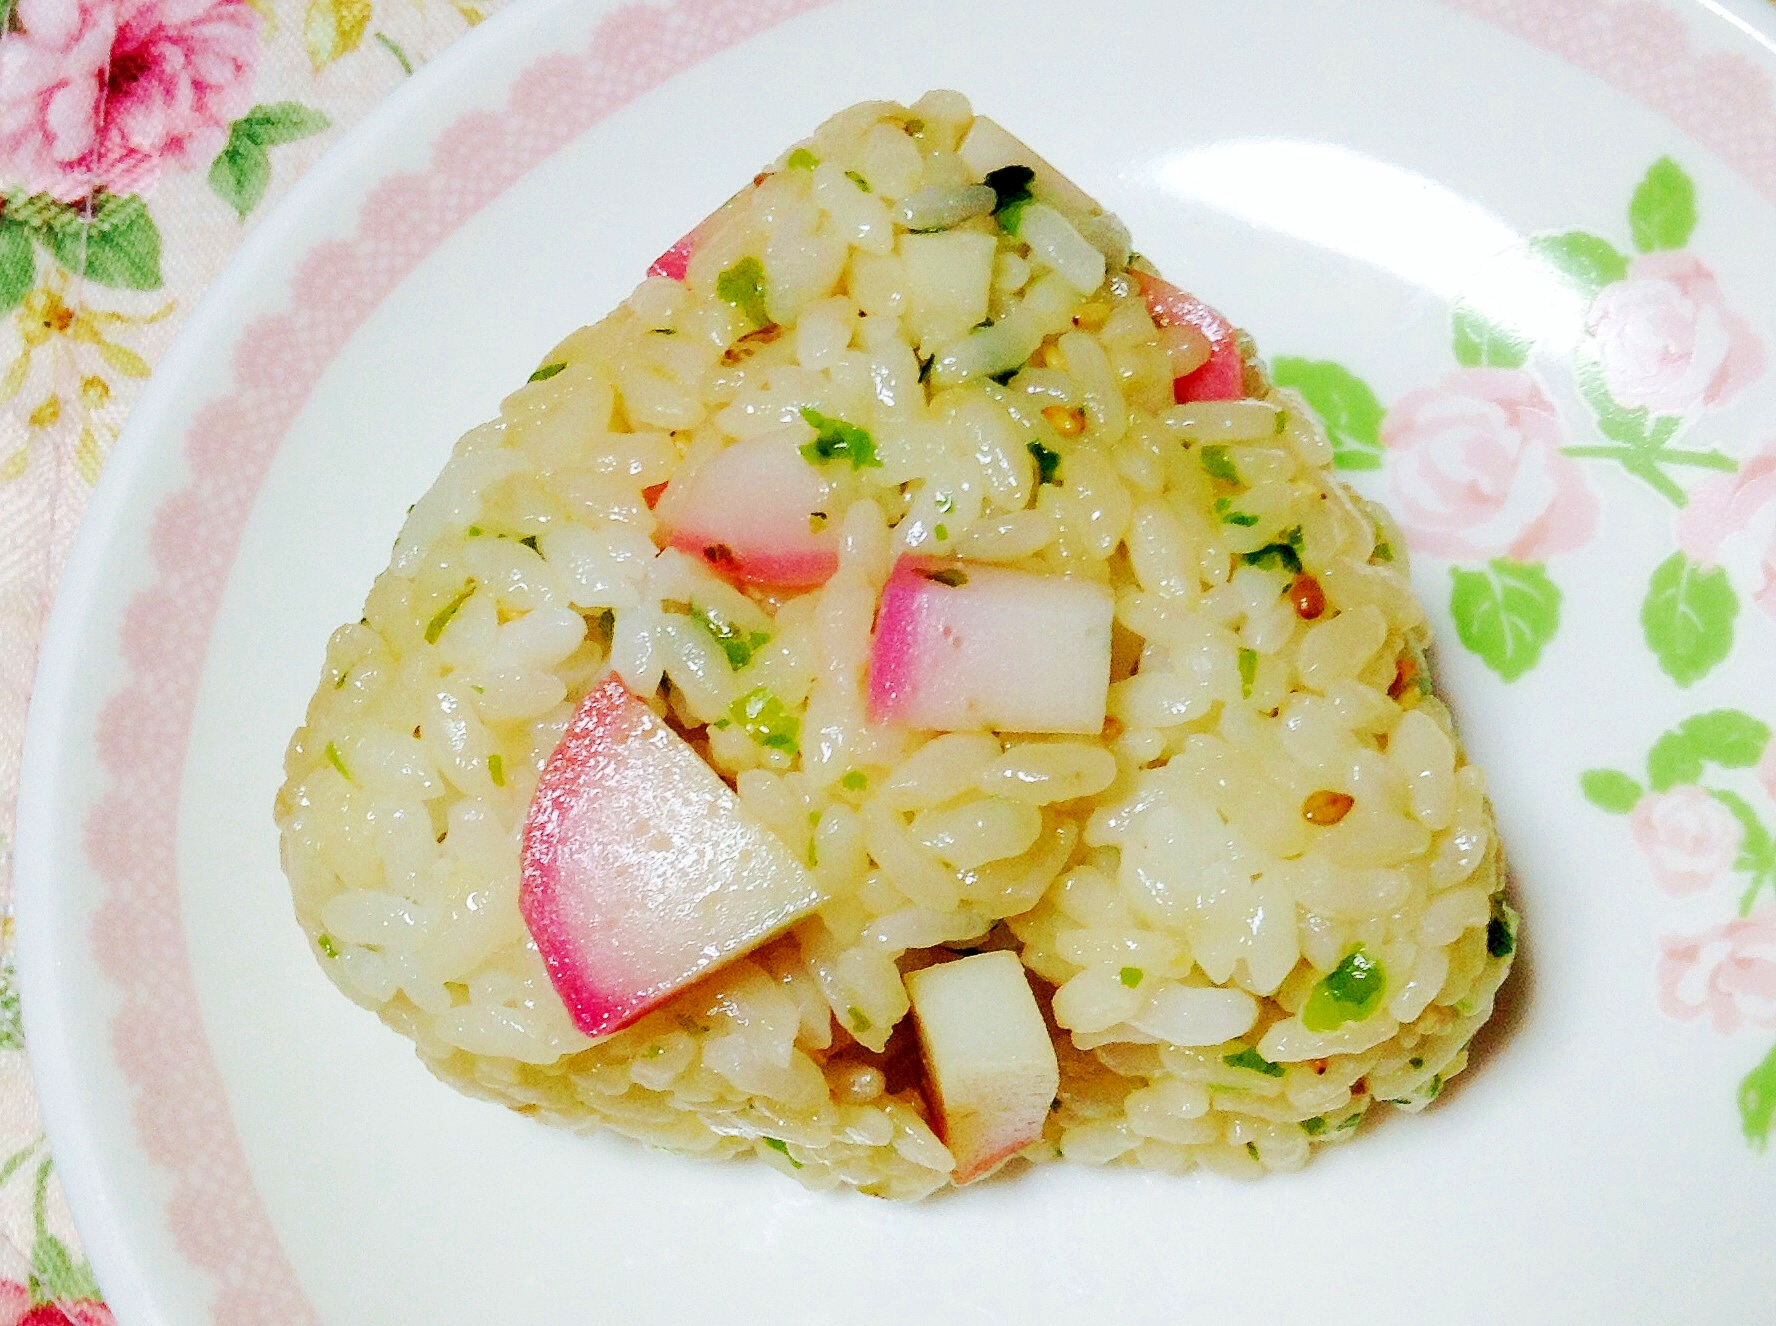 蒲鉾❤︎青海苔❤︎胡麻❤︎麺つゆおにぎり